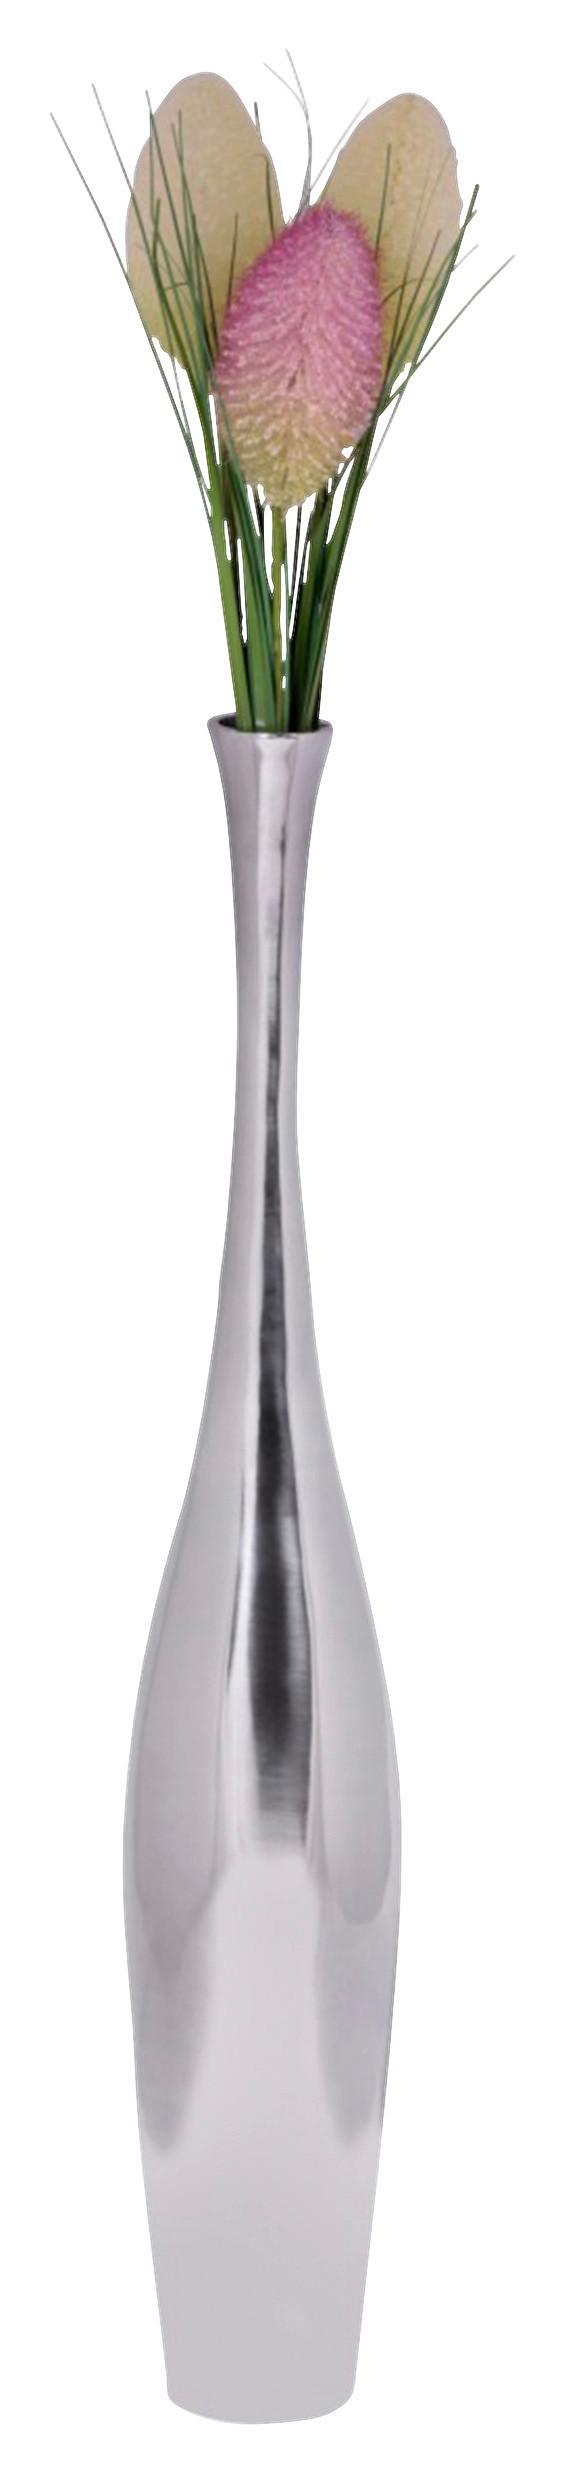 Dekorační Váza Wohnling Stříbrná - barvy stříbra, Moderní, kov (12/75/12cm) - MID.YOU